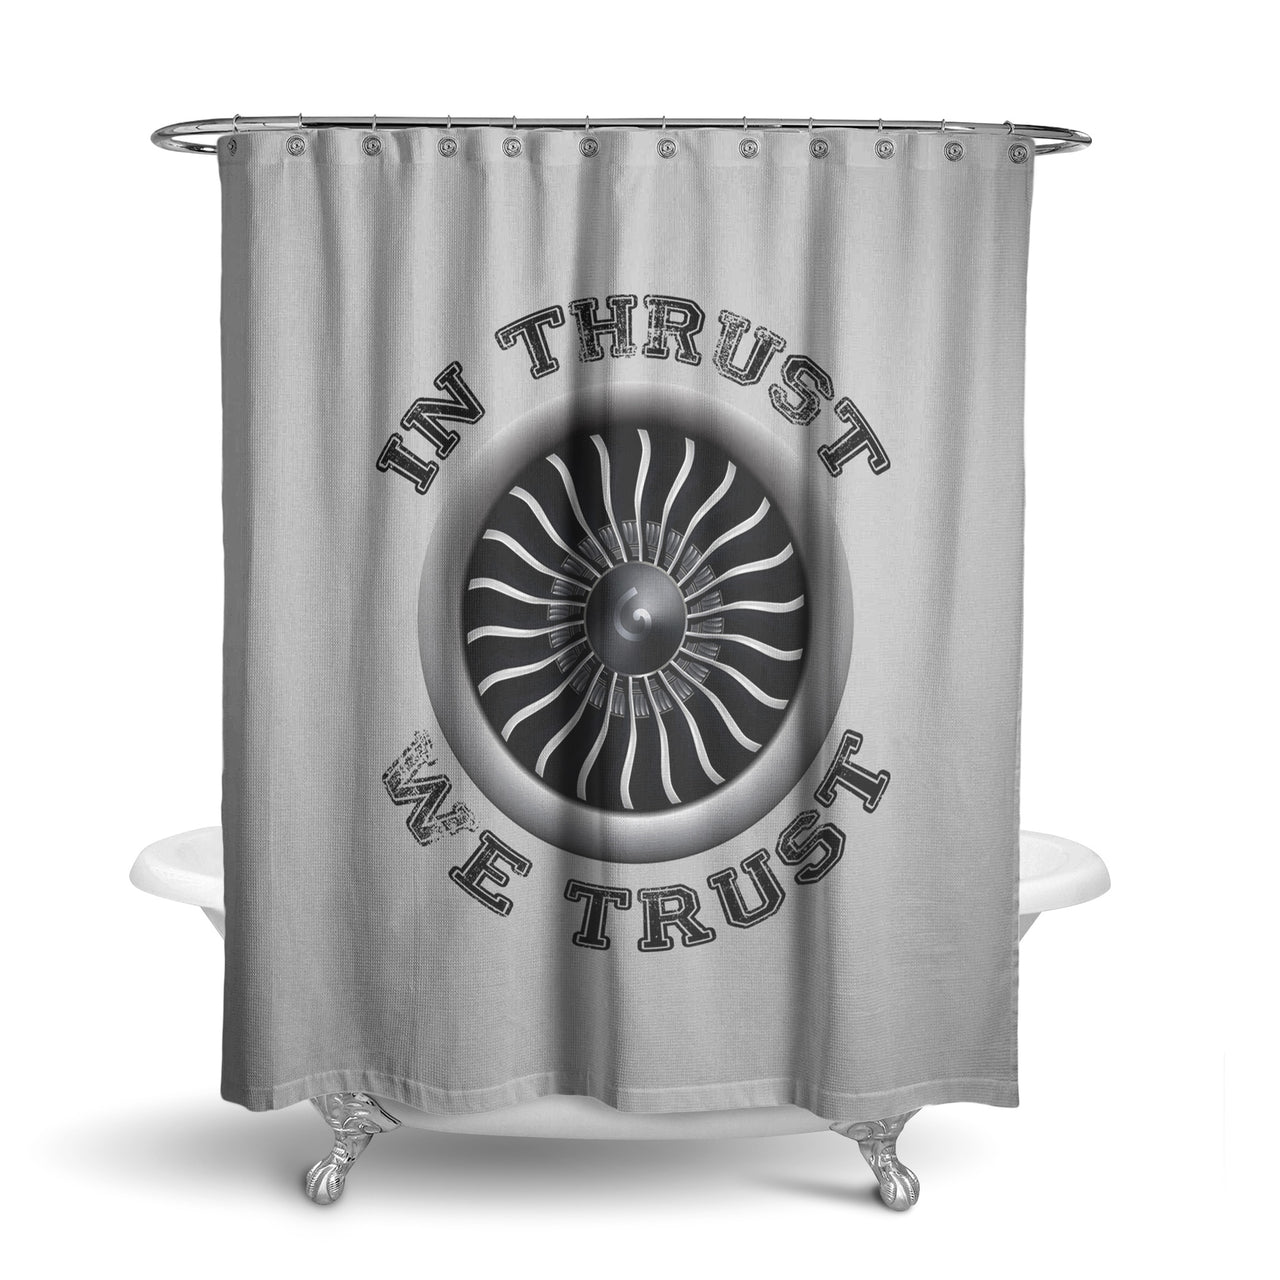 In Thrust We Trust (Vol 2) Designed Shower Curtains